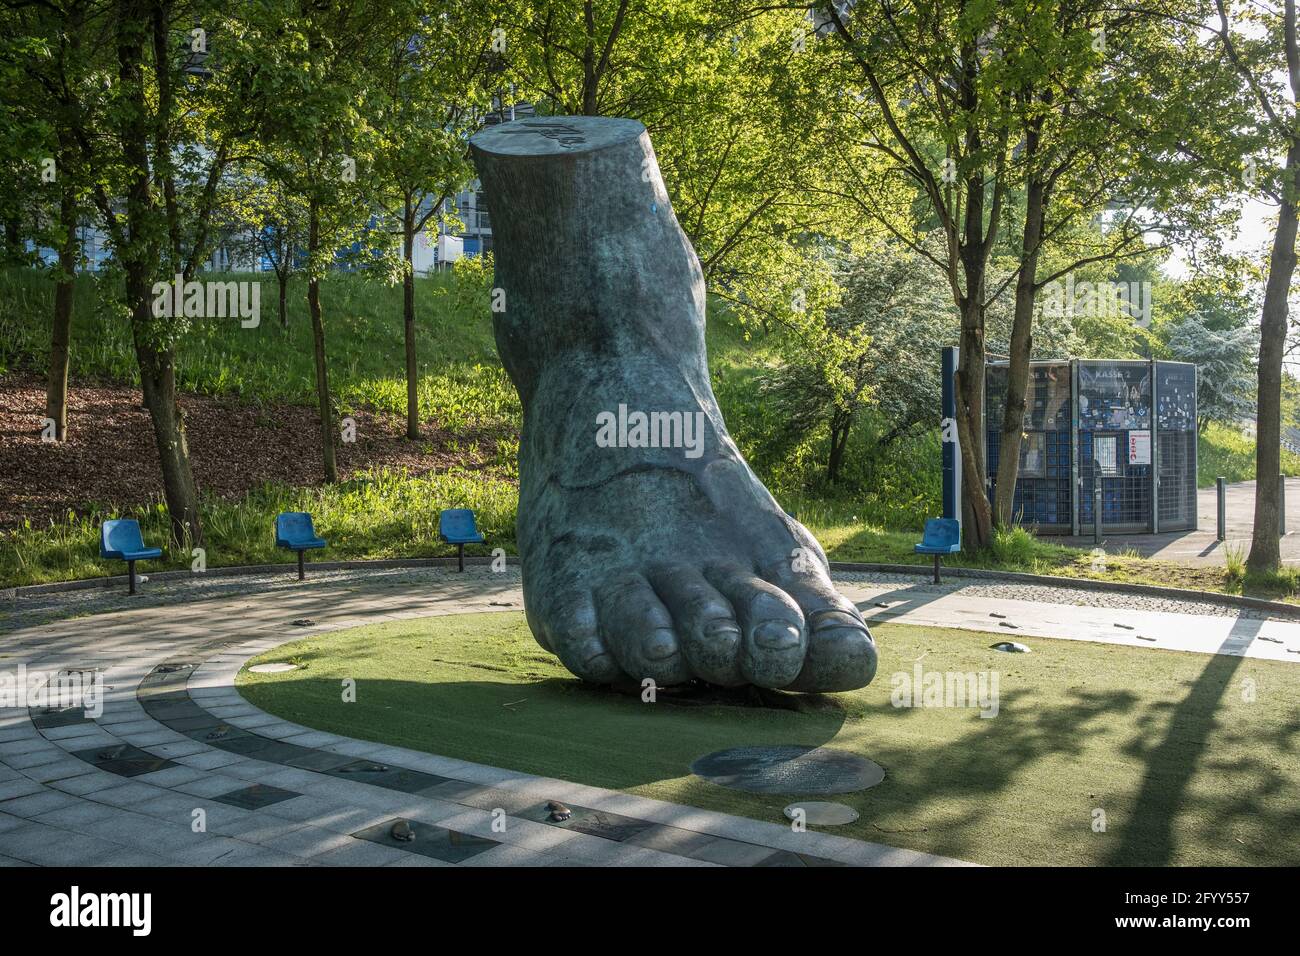 Uwe Seeler, HSV- Fußball-Legende, hat ein Denkmal bekommen: Sein Fuß als übergroßes Denkmal, Am HSV-Stadion en Hamburgo. Foto de stock